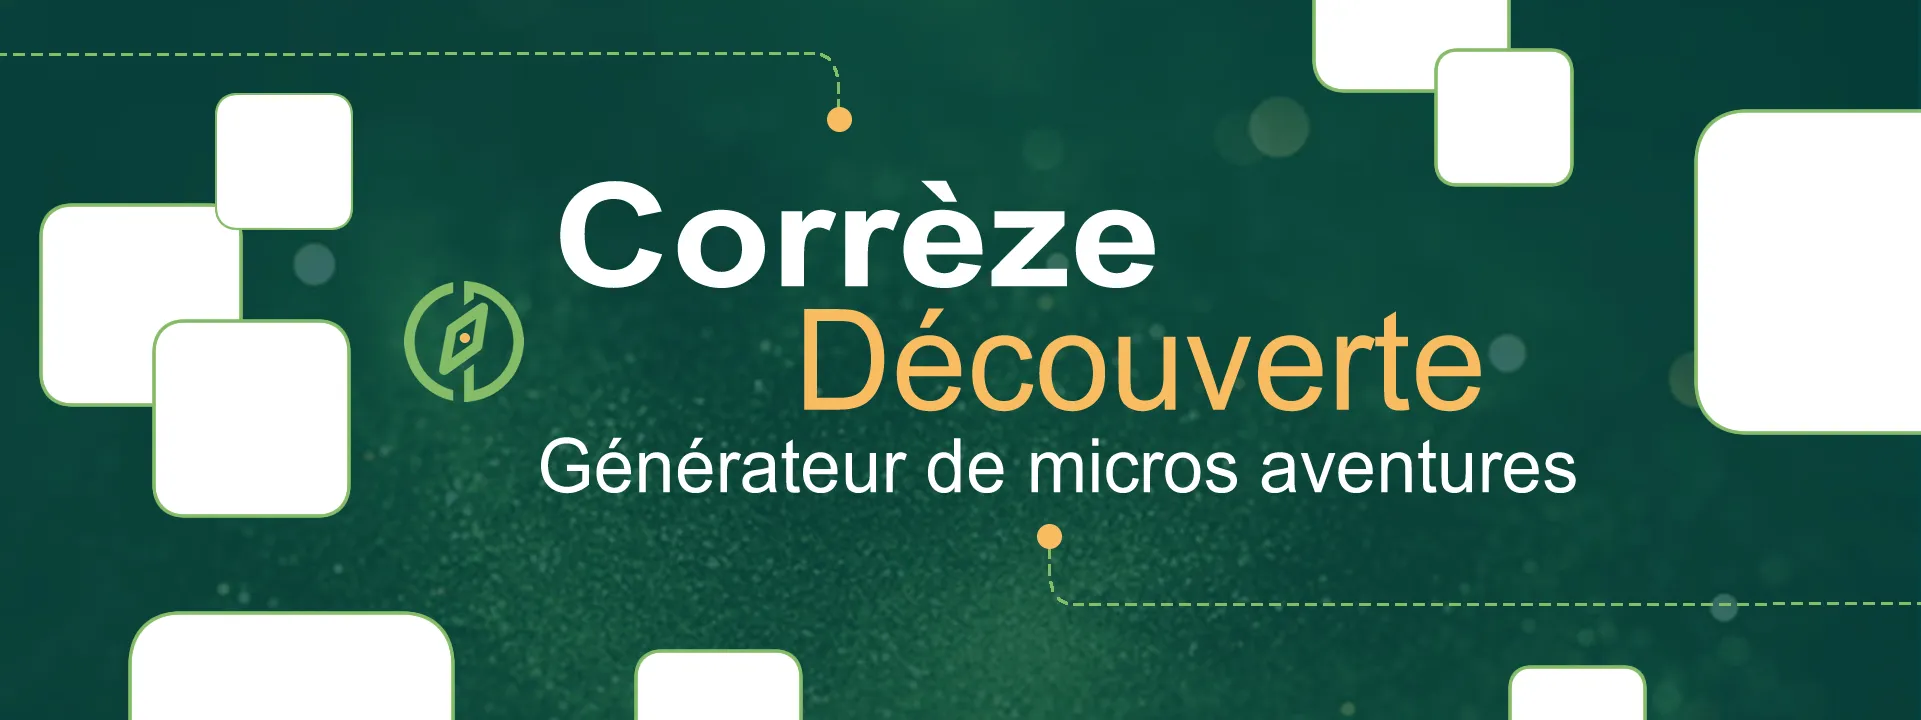 Corrèze découverte - Jeff Allanic - Générateur de micros aventures en photos - Présentation 1 - 1